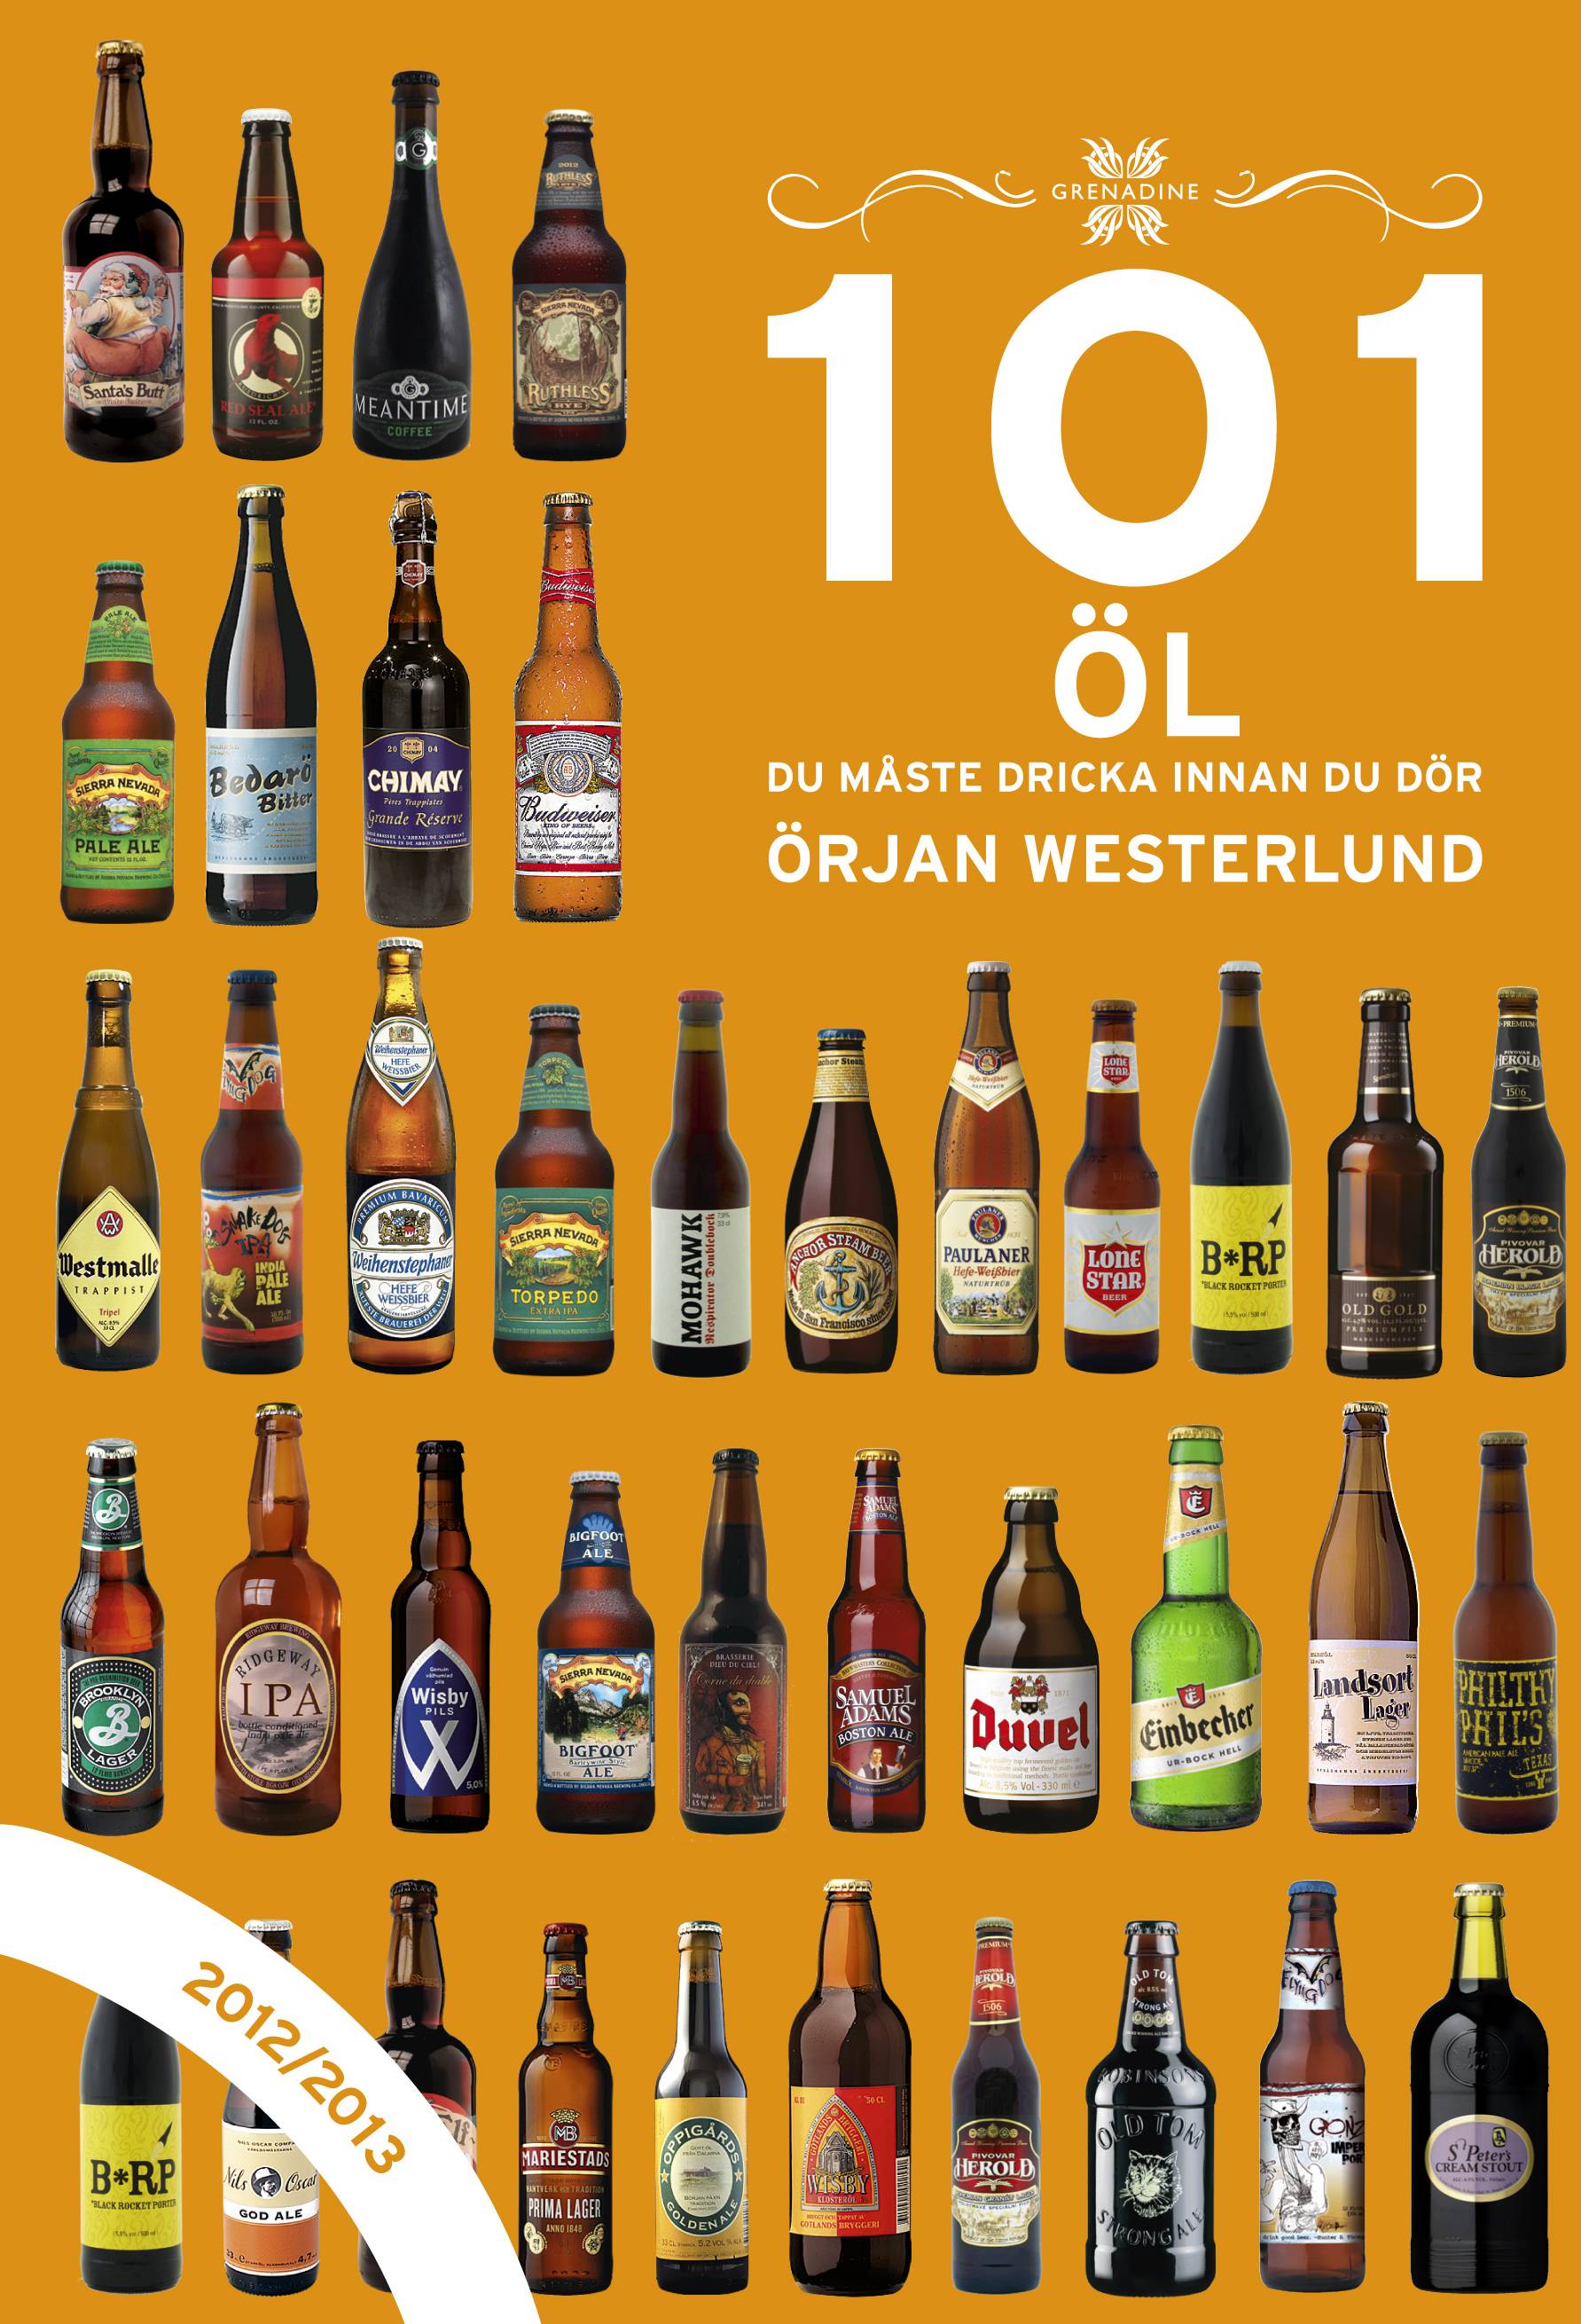 101 öl du måste dricka innan du dör 2012/2013